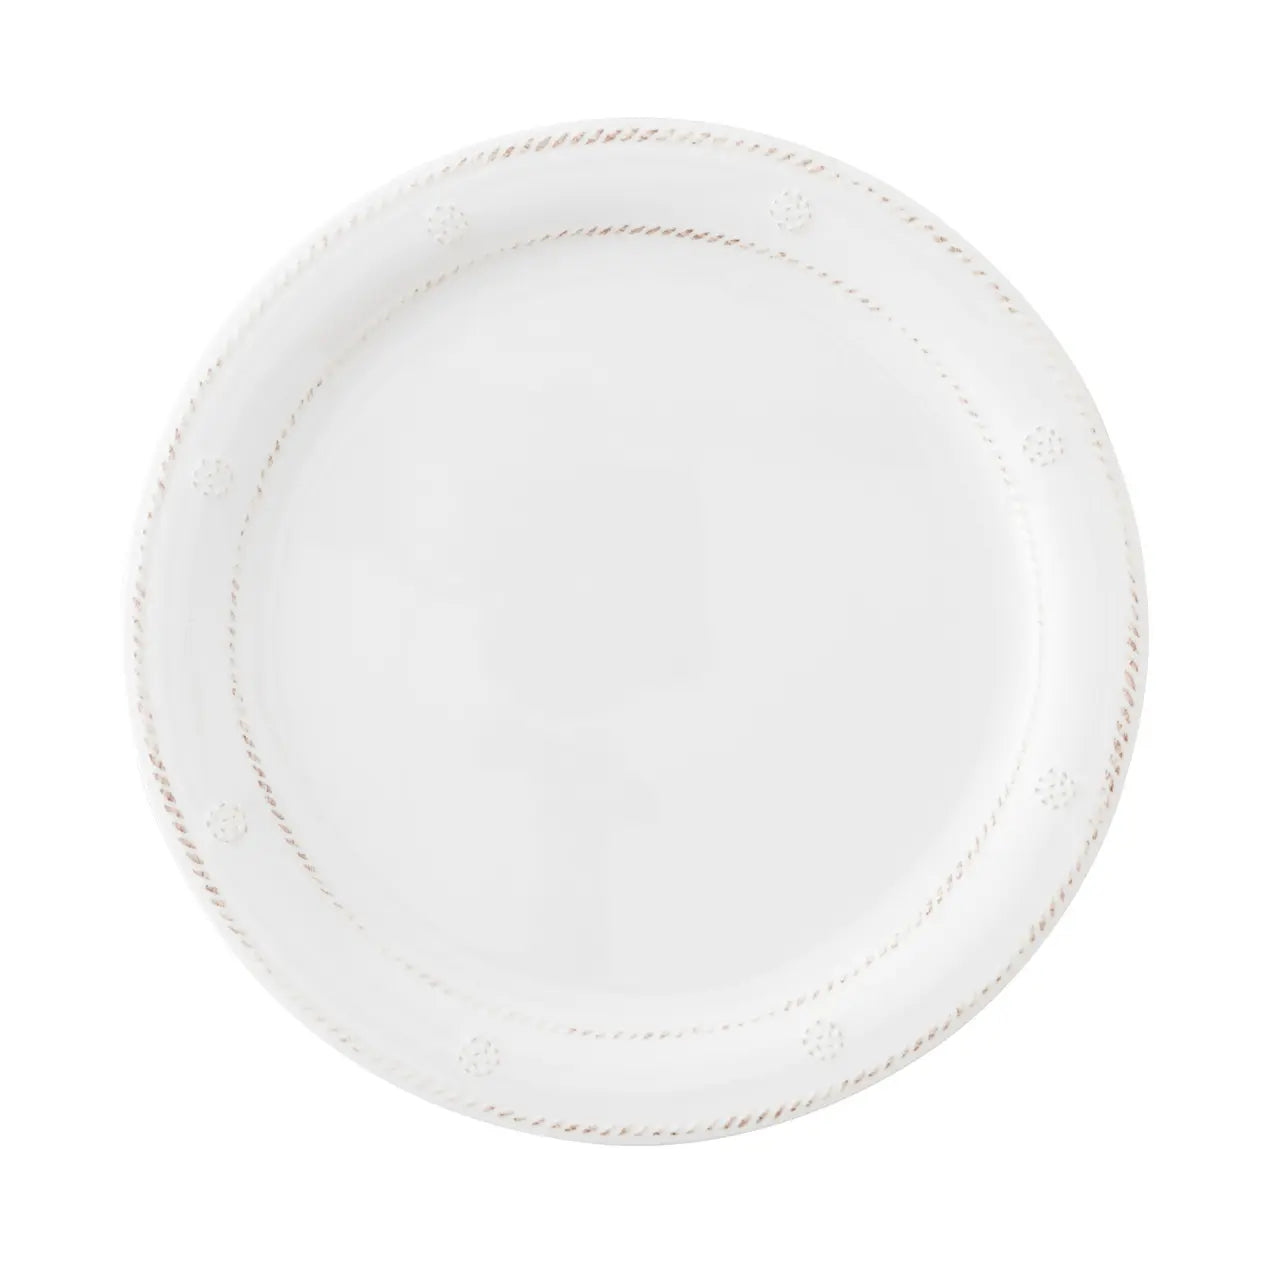 Juliska Berry & Thread Melamine Dinner Plate